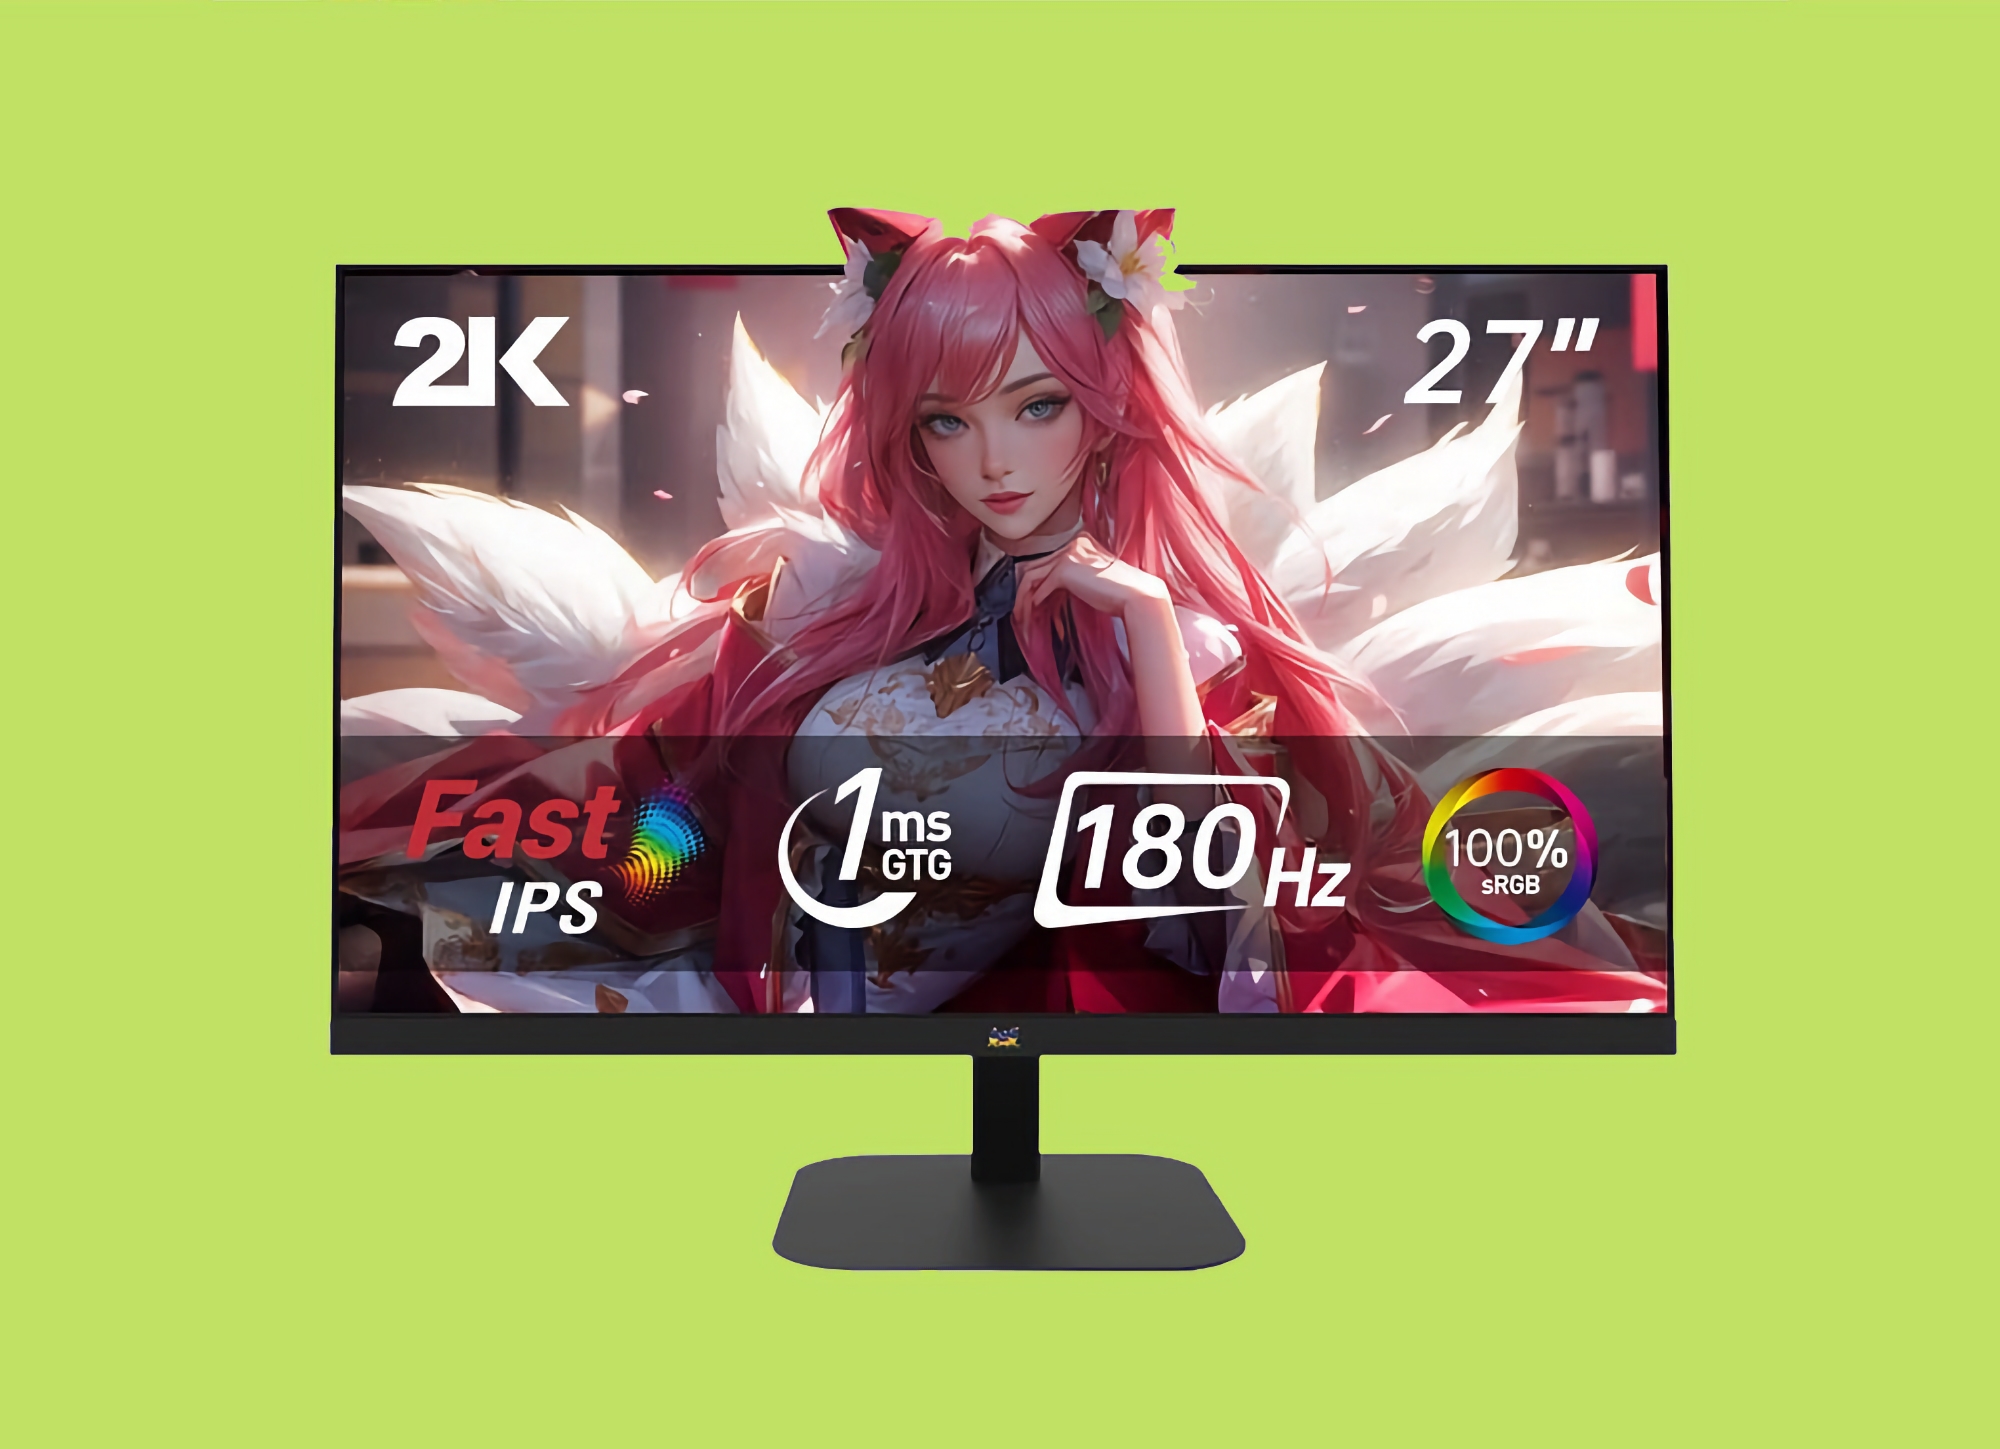 ViewSonic stellt den VX2757-2K-PRO vor: 27-Zoll-Monitor mit 2K-Auflösung und 180 Hz Bildwiederholfrequenz für 123 US-Dollar